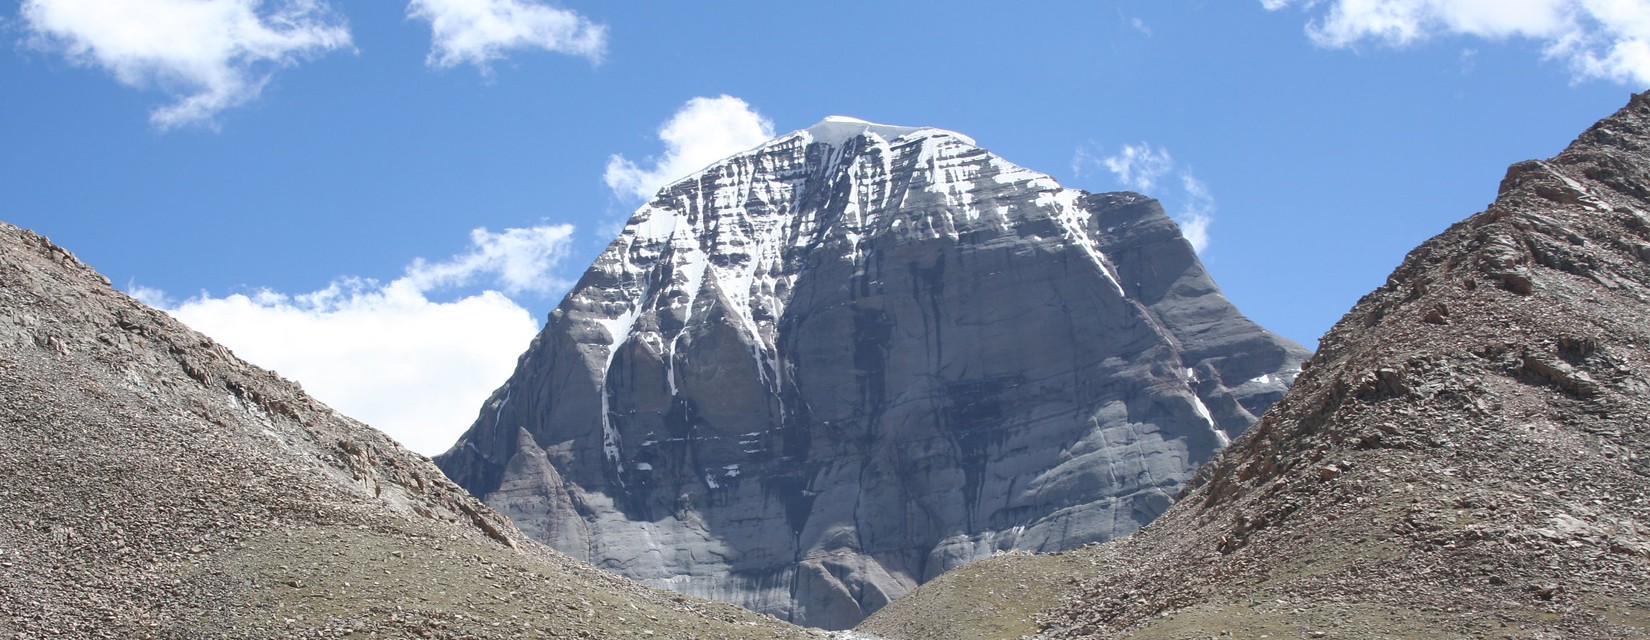 Mt. Kailash Mansarovar Yatra